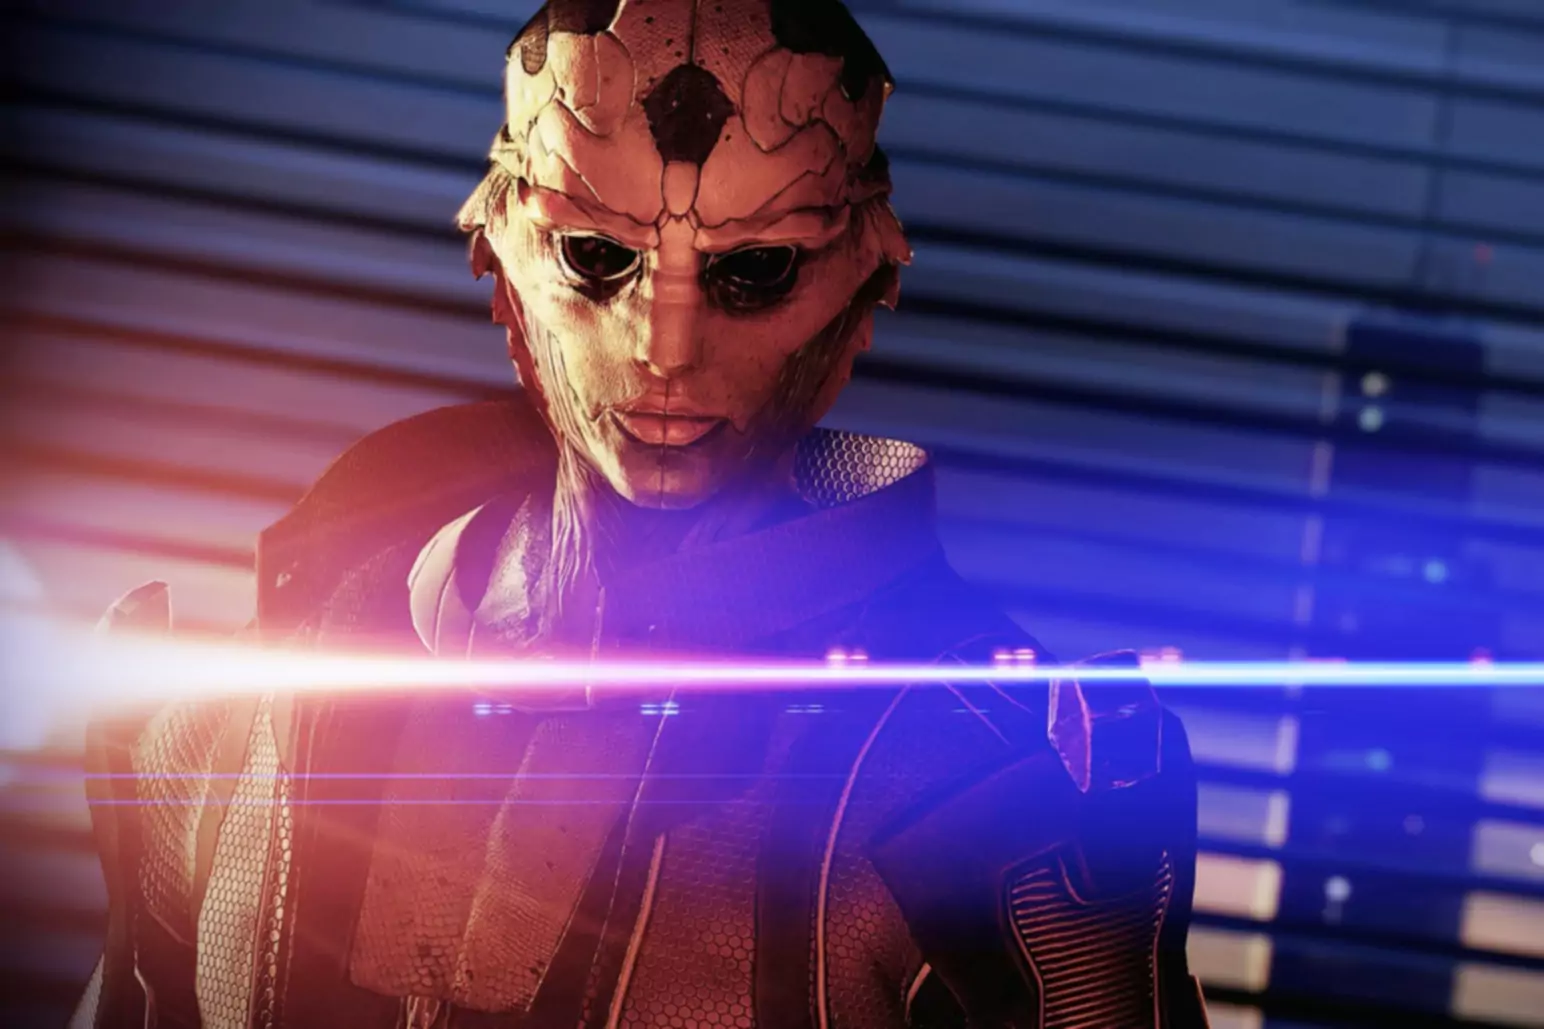 Schermata del gioco Mass Effect con il personaggio che indossa una maschera illuminata da luci blu e arancioni